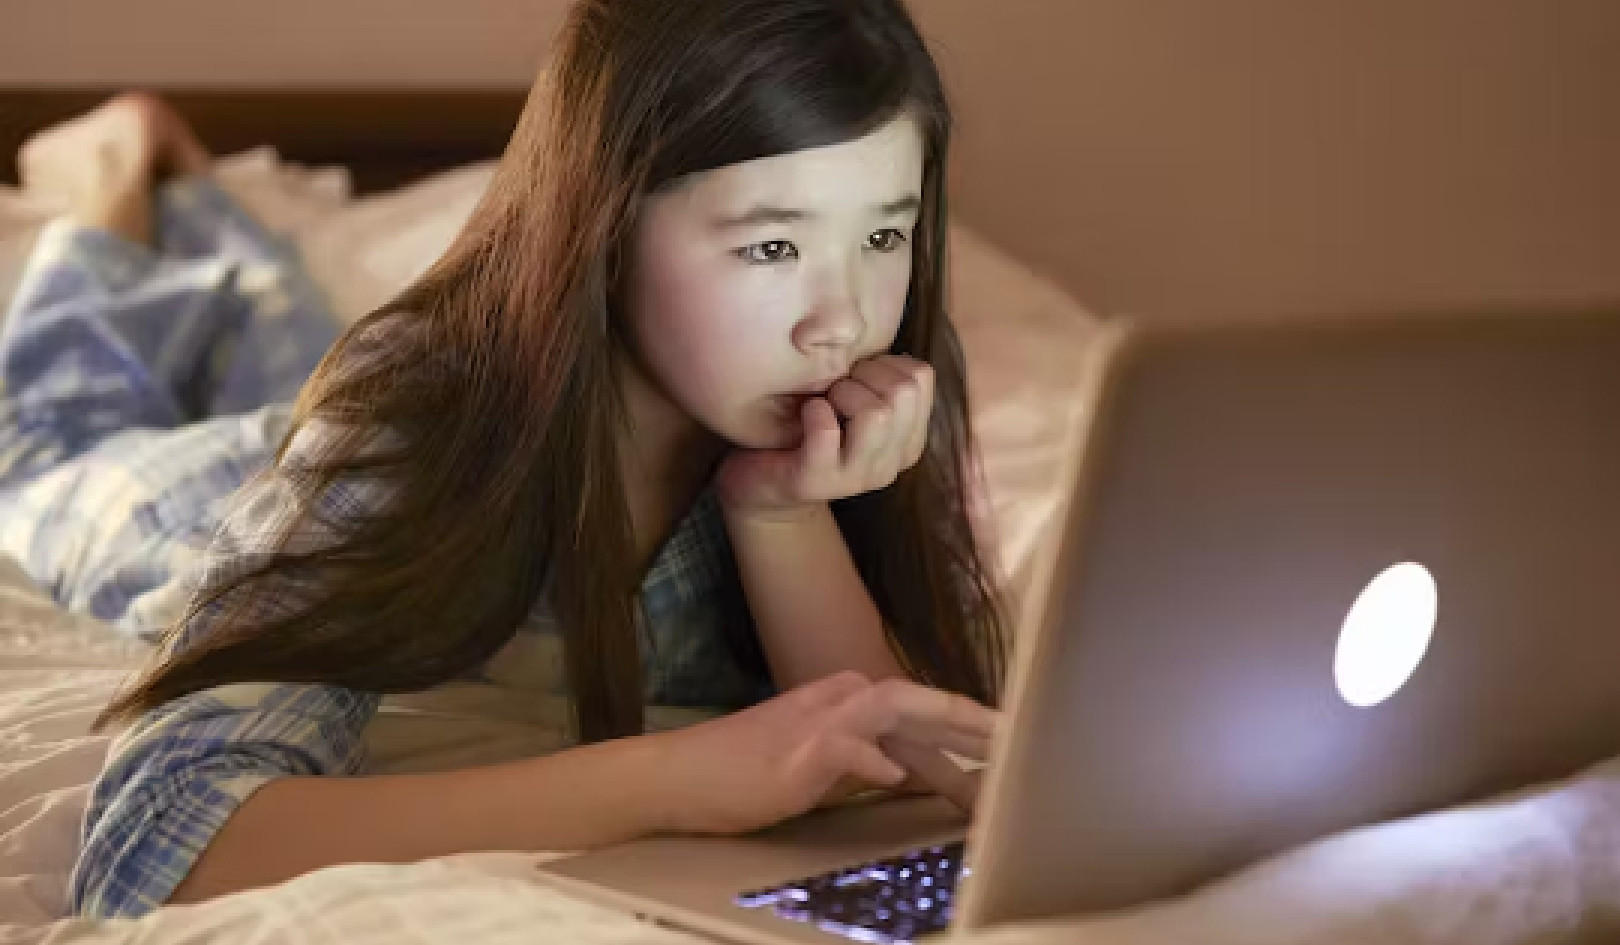 儿童网络摄像头正成为网络掠夺者的目标